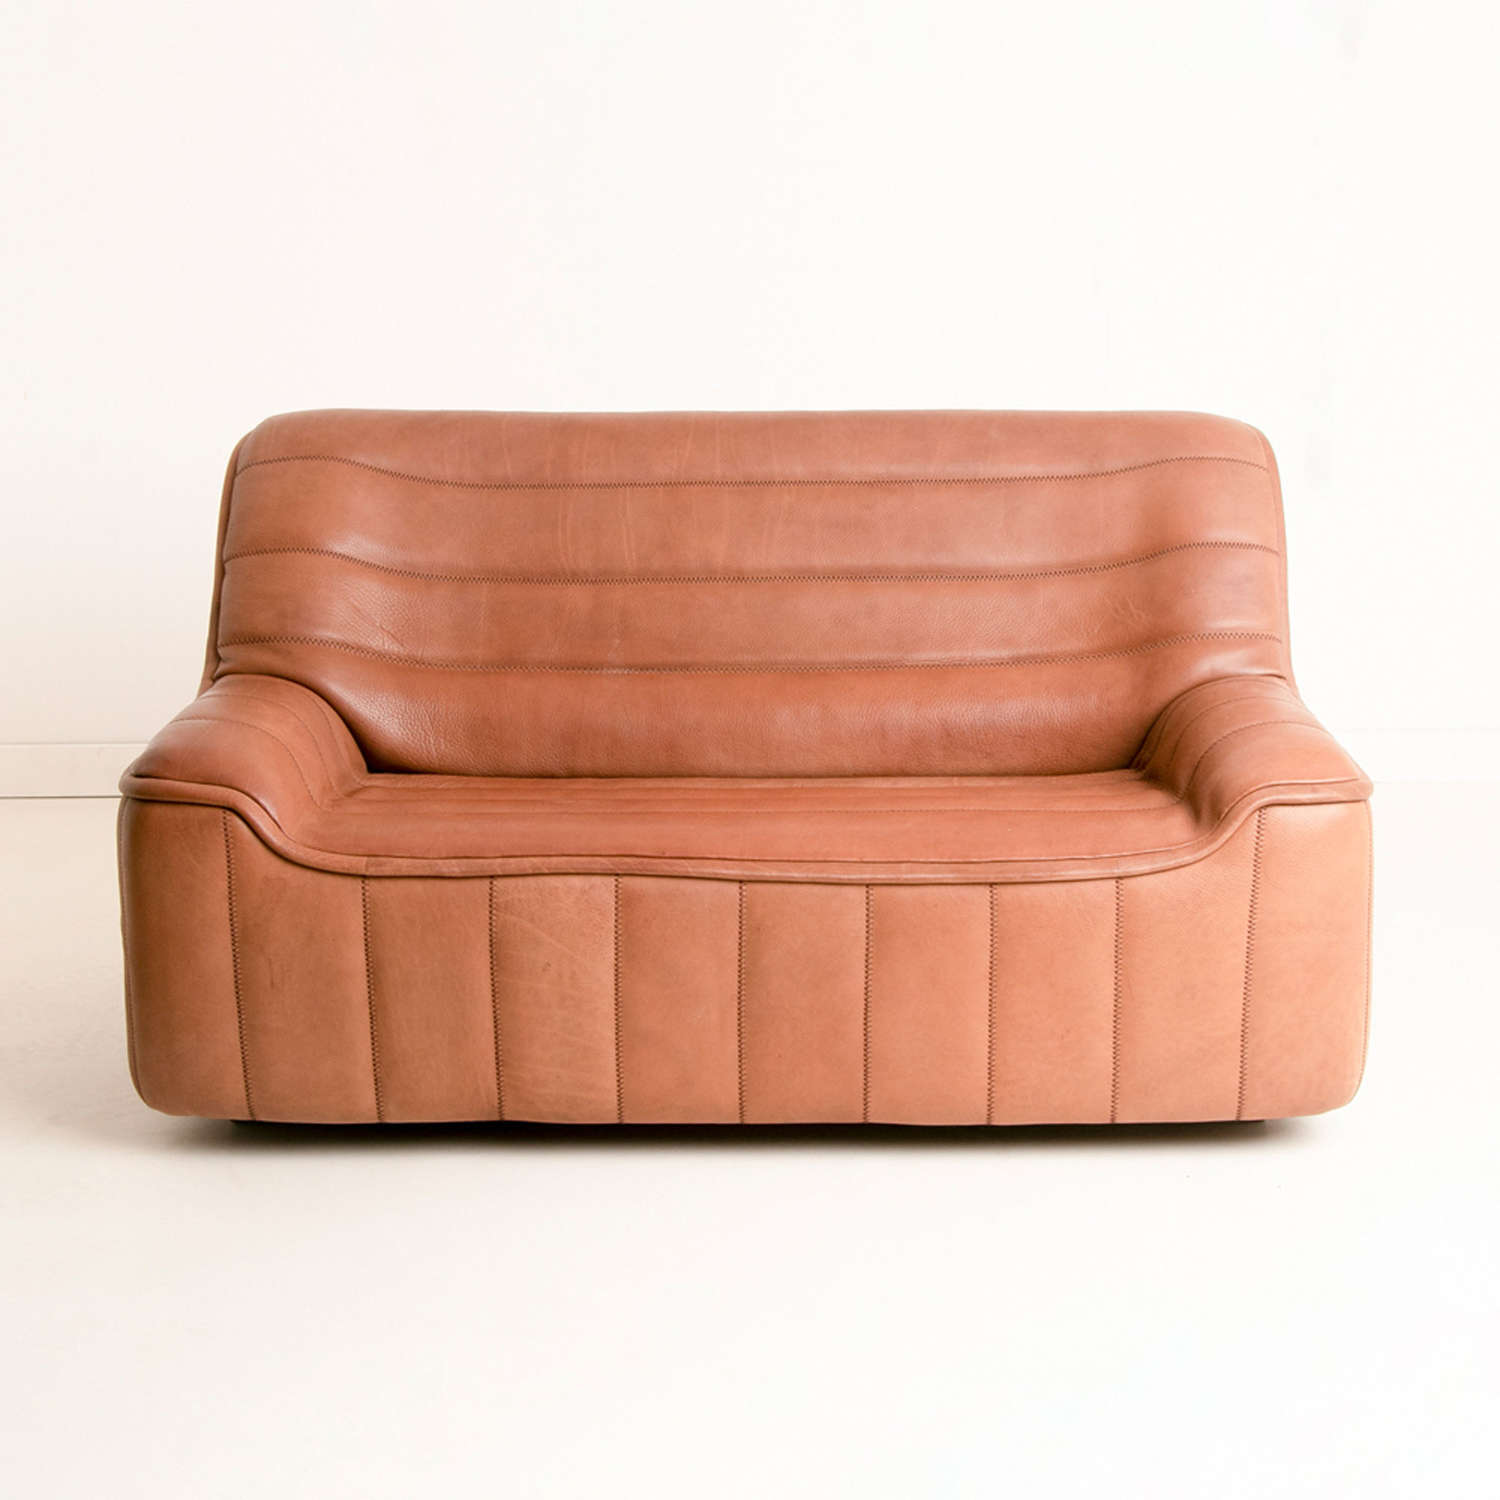 DS84 Model Buffalo Leather Sofa by De Sede Switzerland c.1970